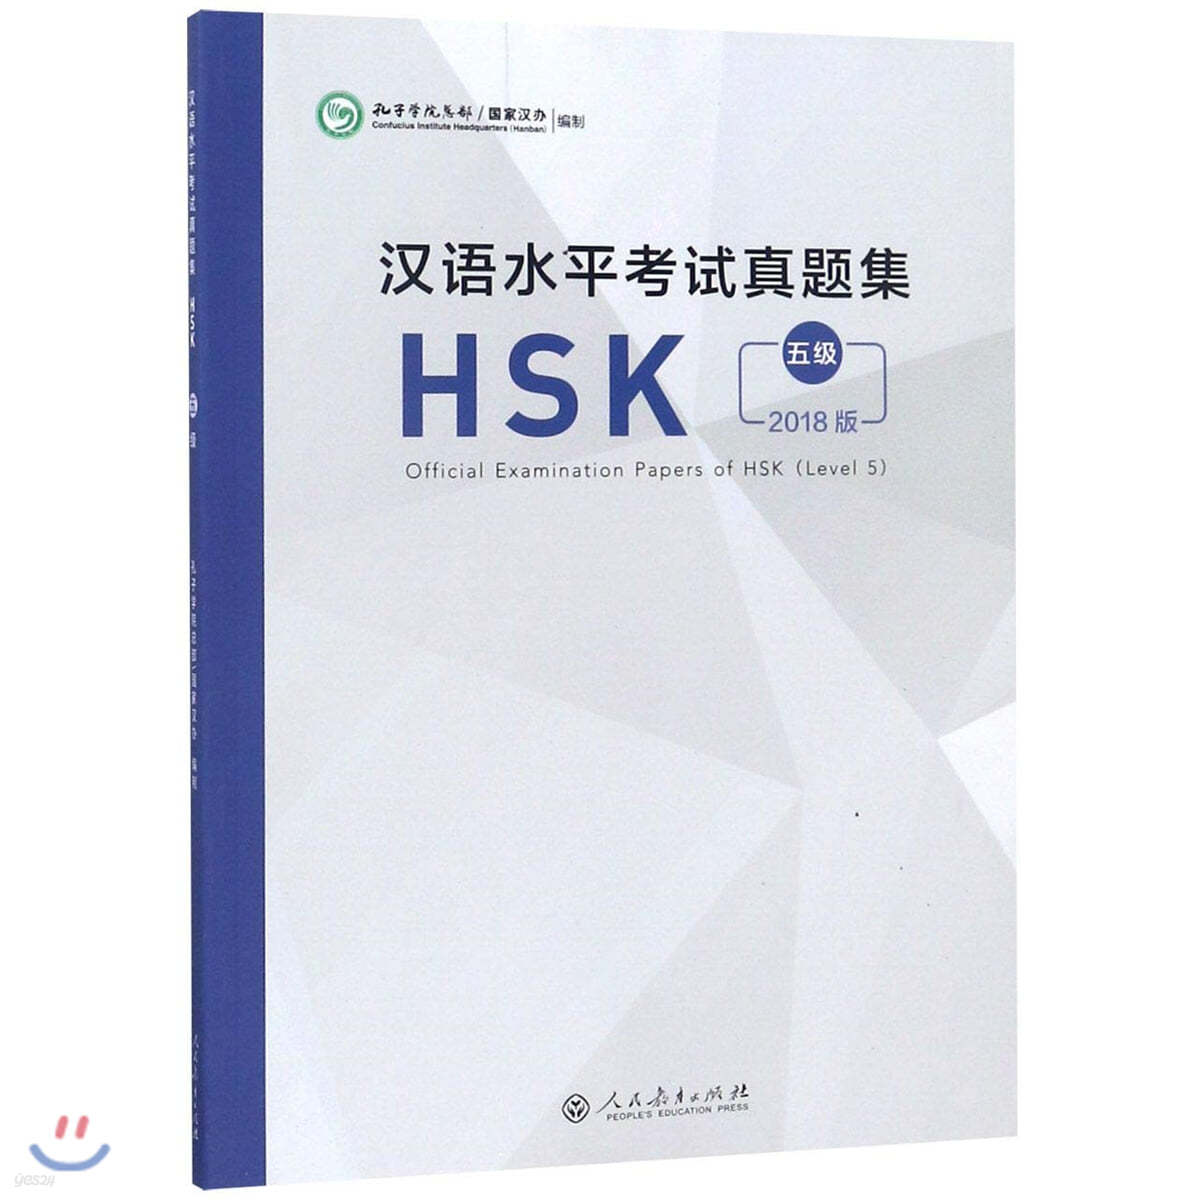 2018 漢語水平考試?題集  HSK 5級 한어수평고시진제집HSK 5급 Official Examination Papers of HSK (Level 5)